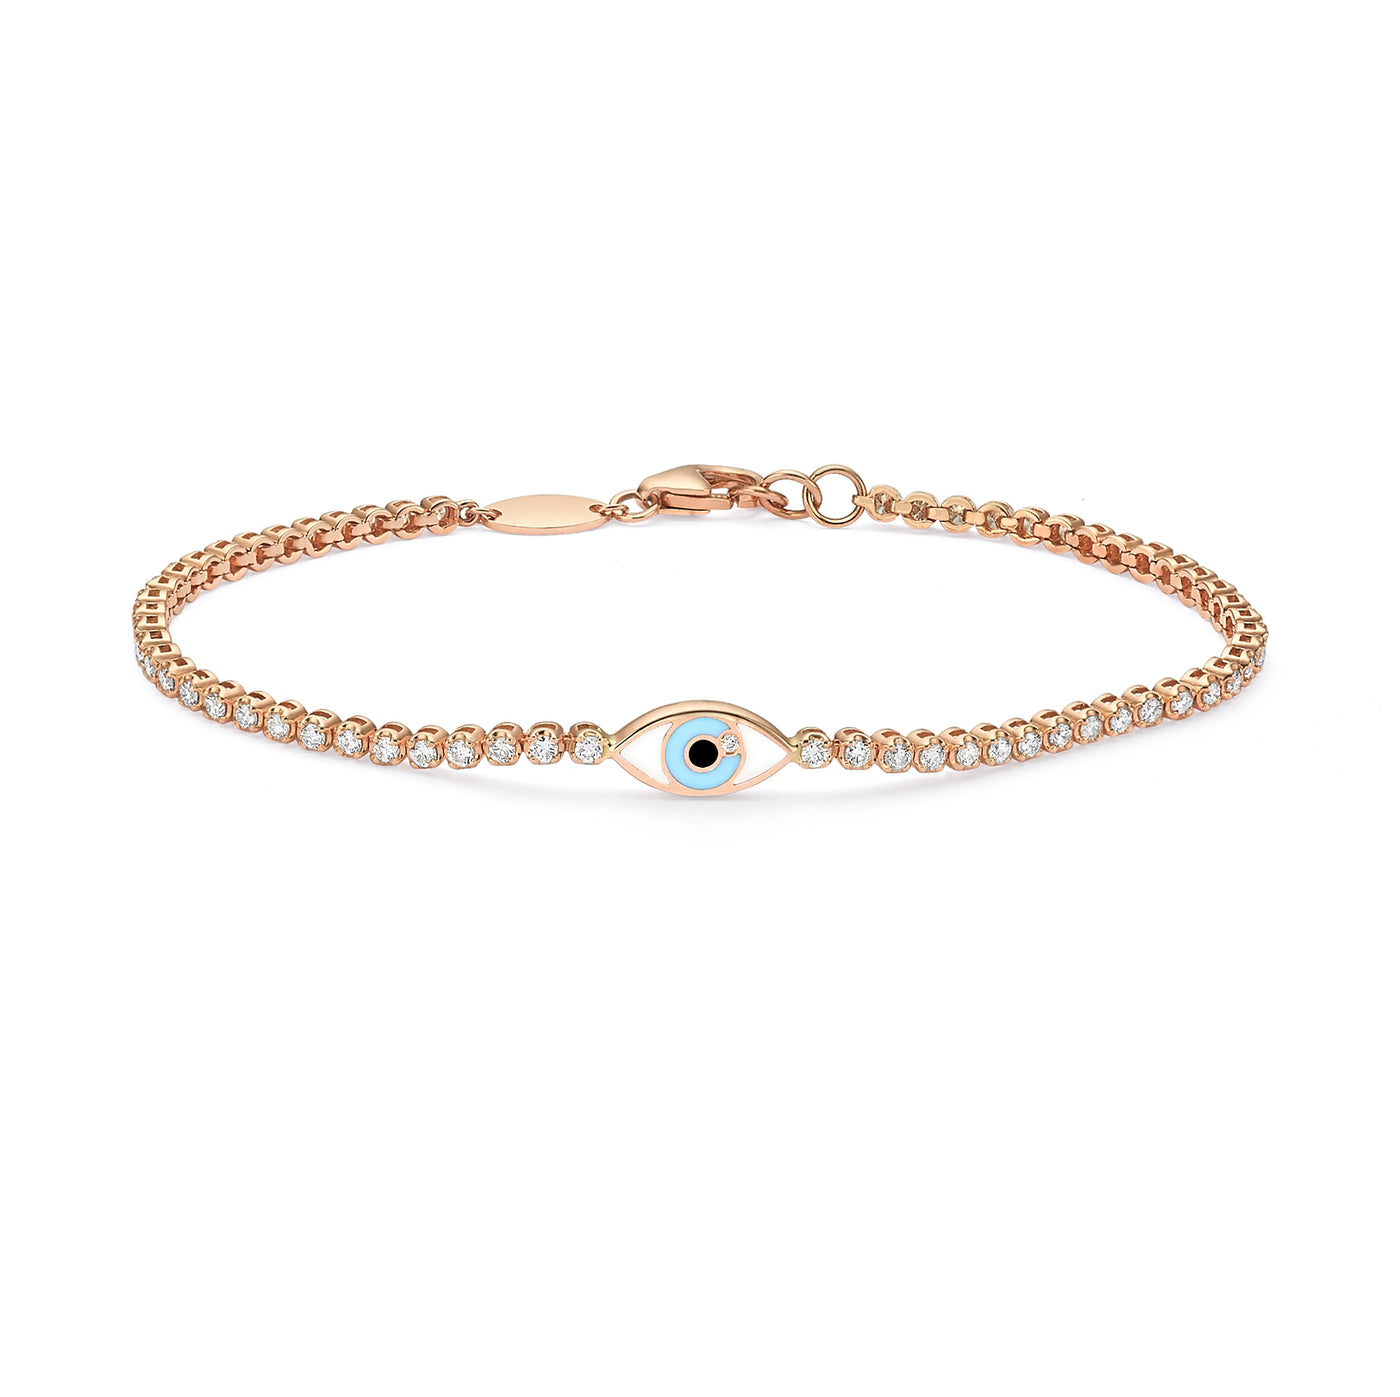 Santorini Eye tennis bracelet